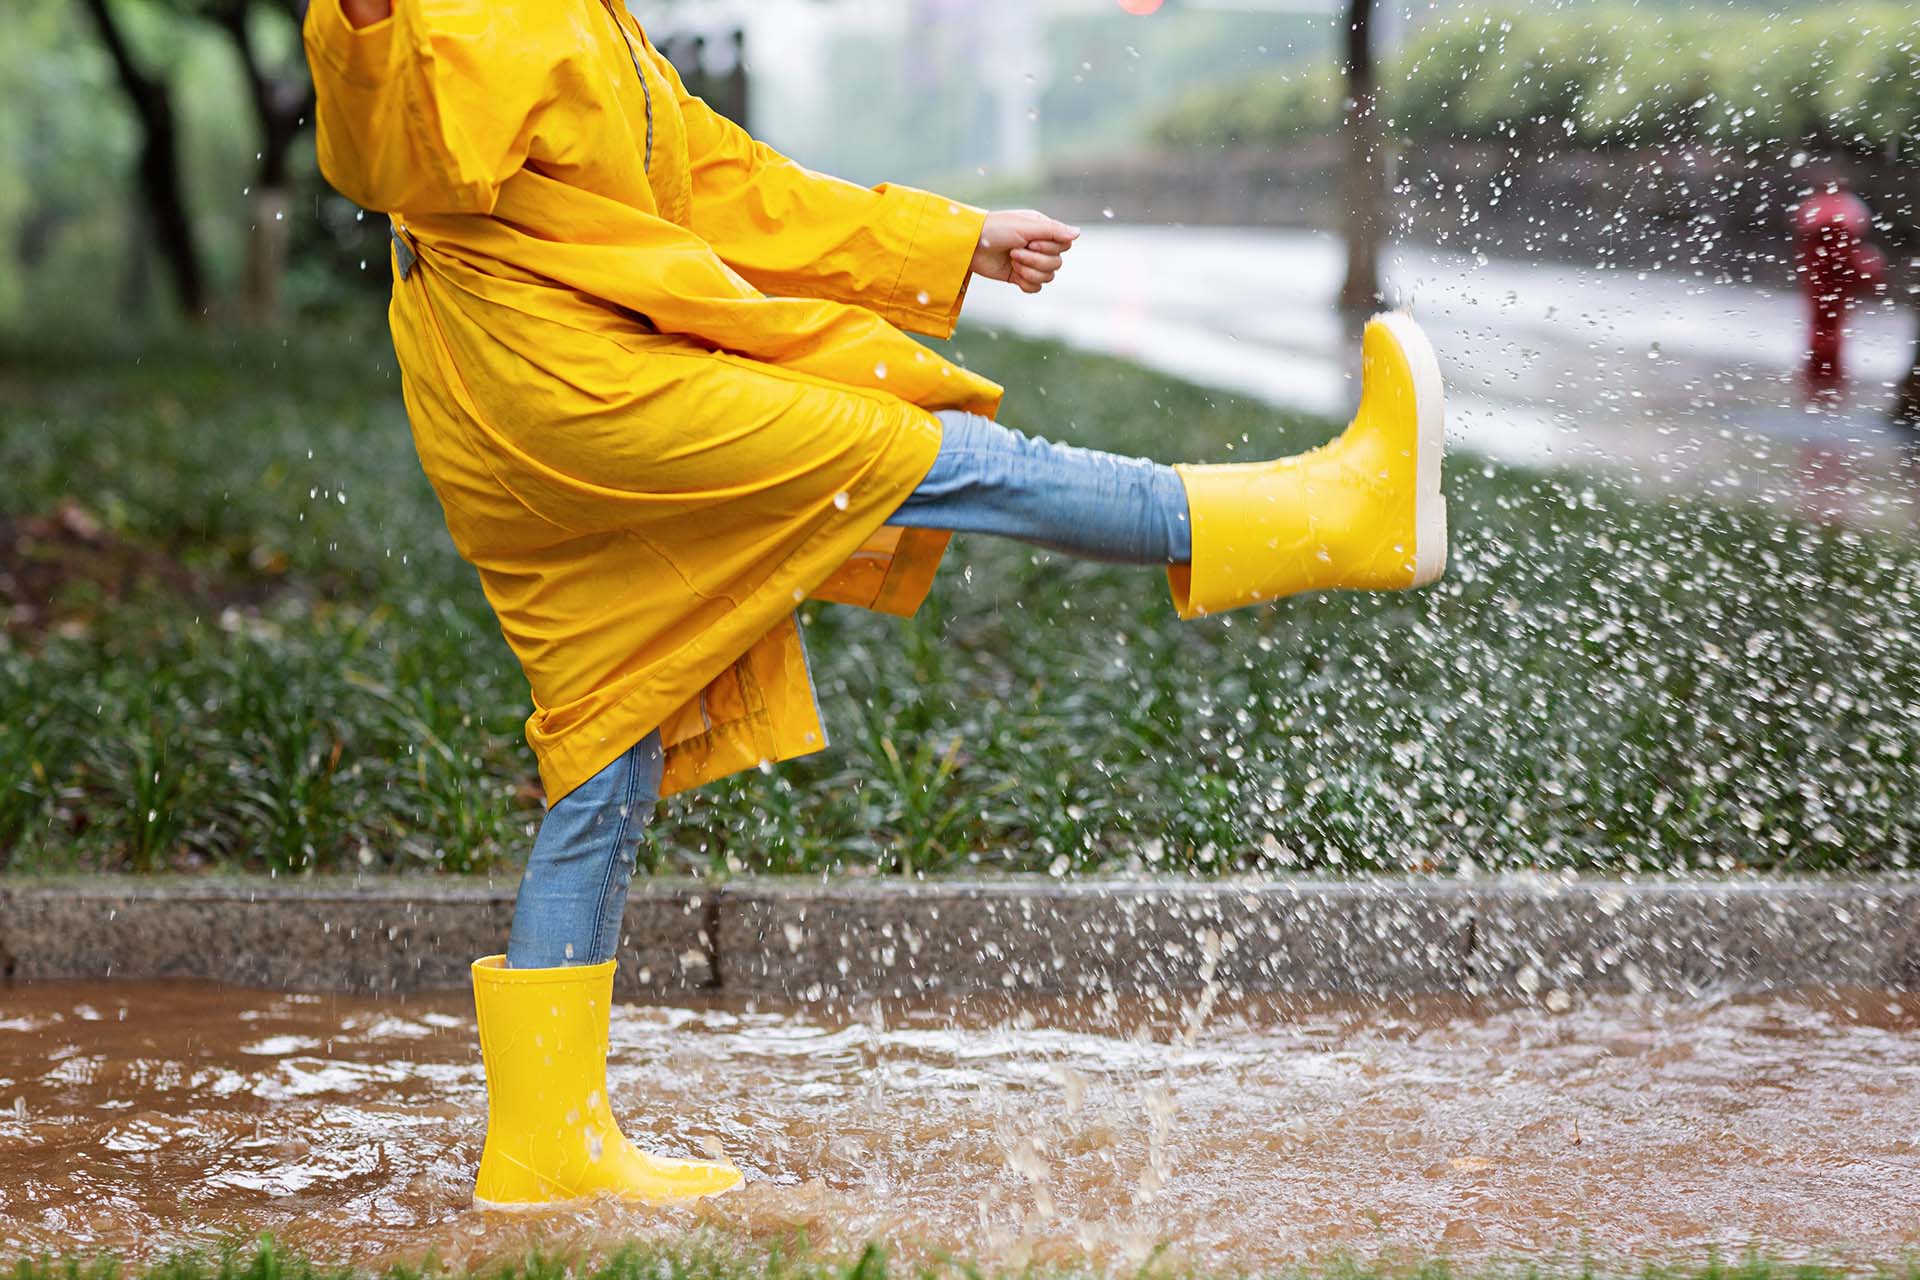 Deszczowy dzień w mieście — co zabrać ze sobą?